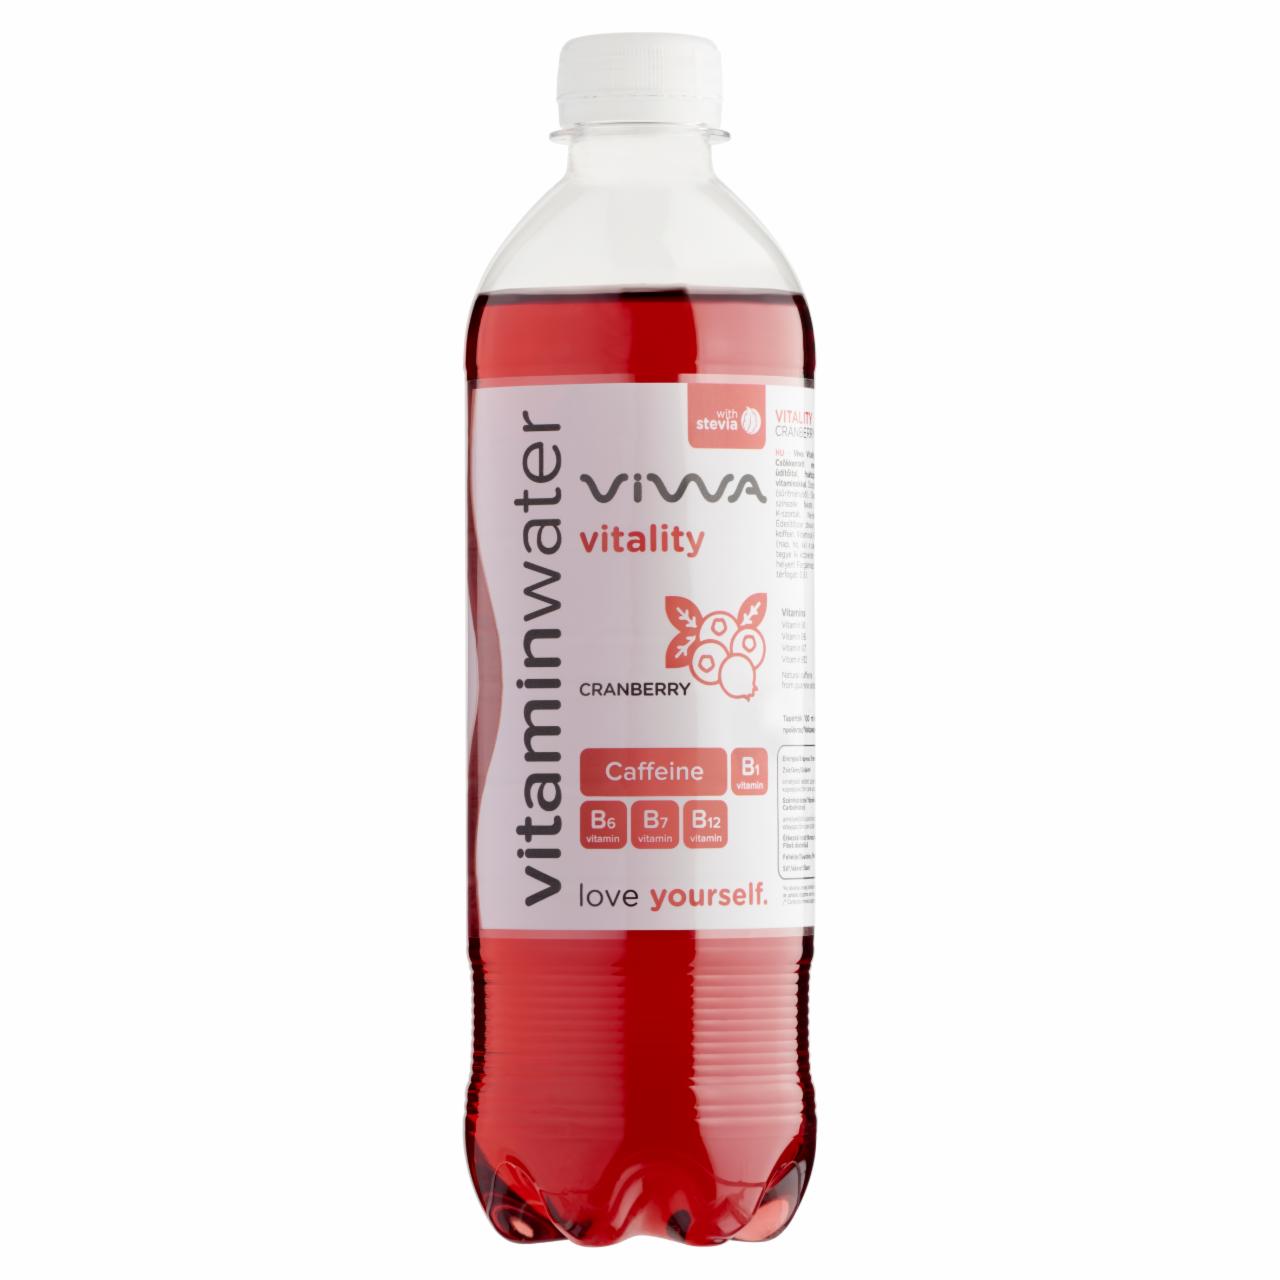 Képek - Viwa Vitaminwater Vitality vörös áfonyás csökkentett energiatartalmú szénsavmentes üdítőital 600 ml